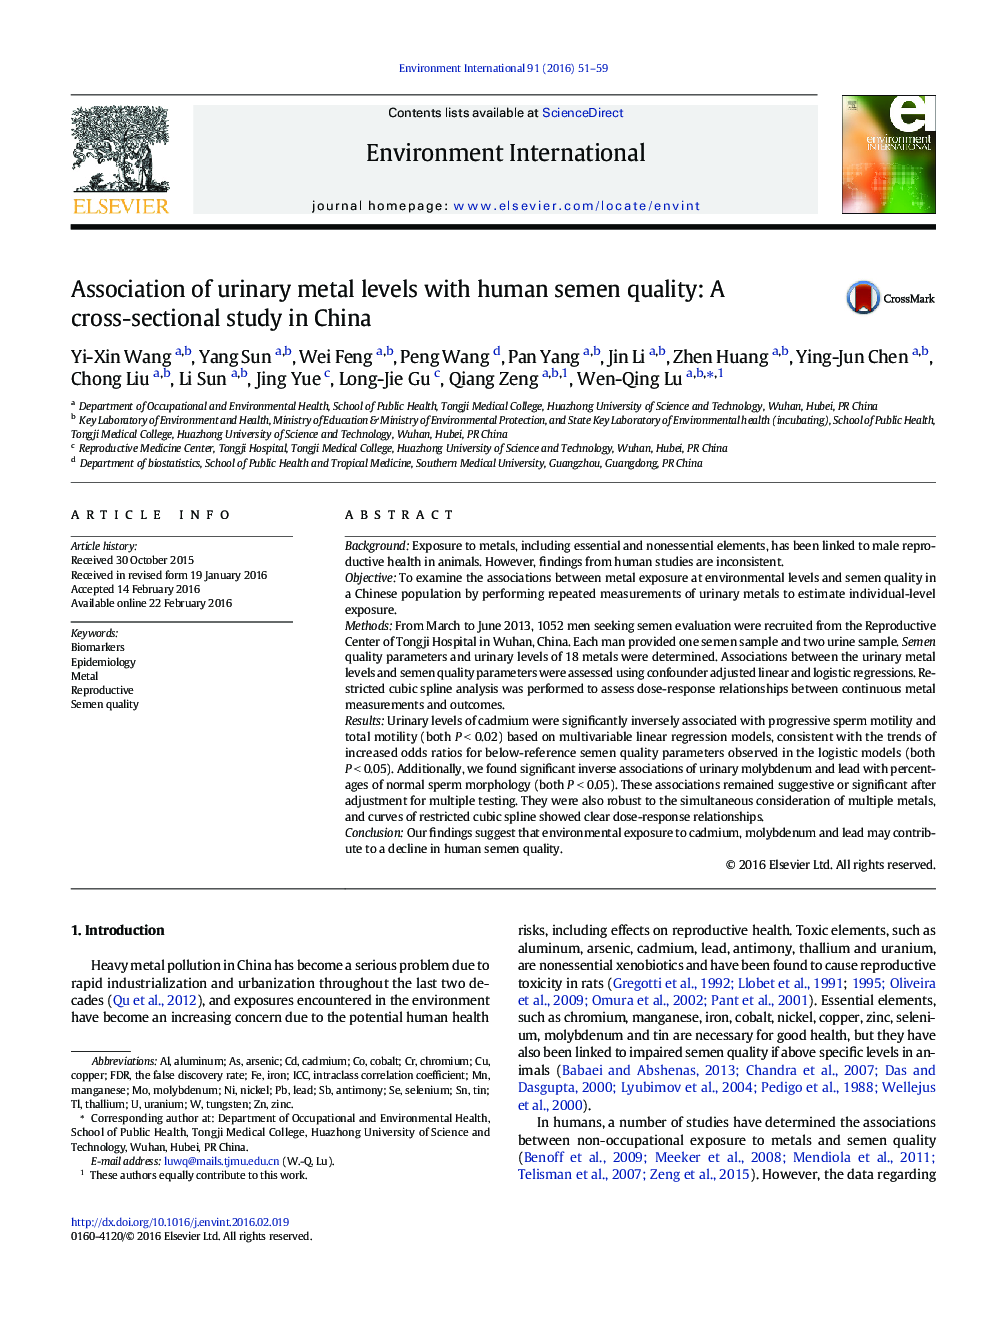 انجمن سطح فلز ادرار با کیفیت منی اسپرم: یک مطالعه مقطعی در چین 